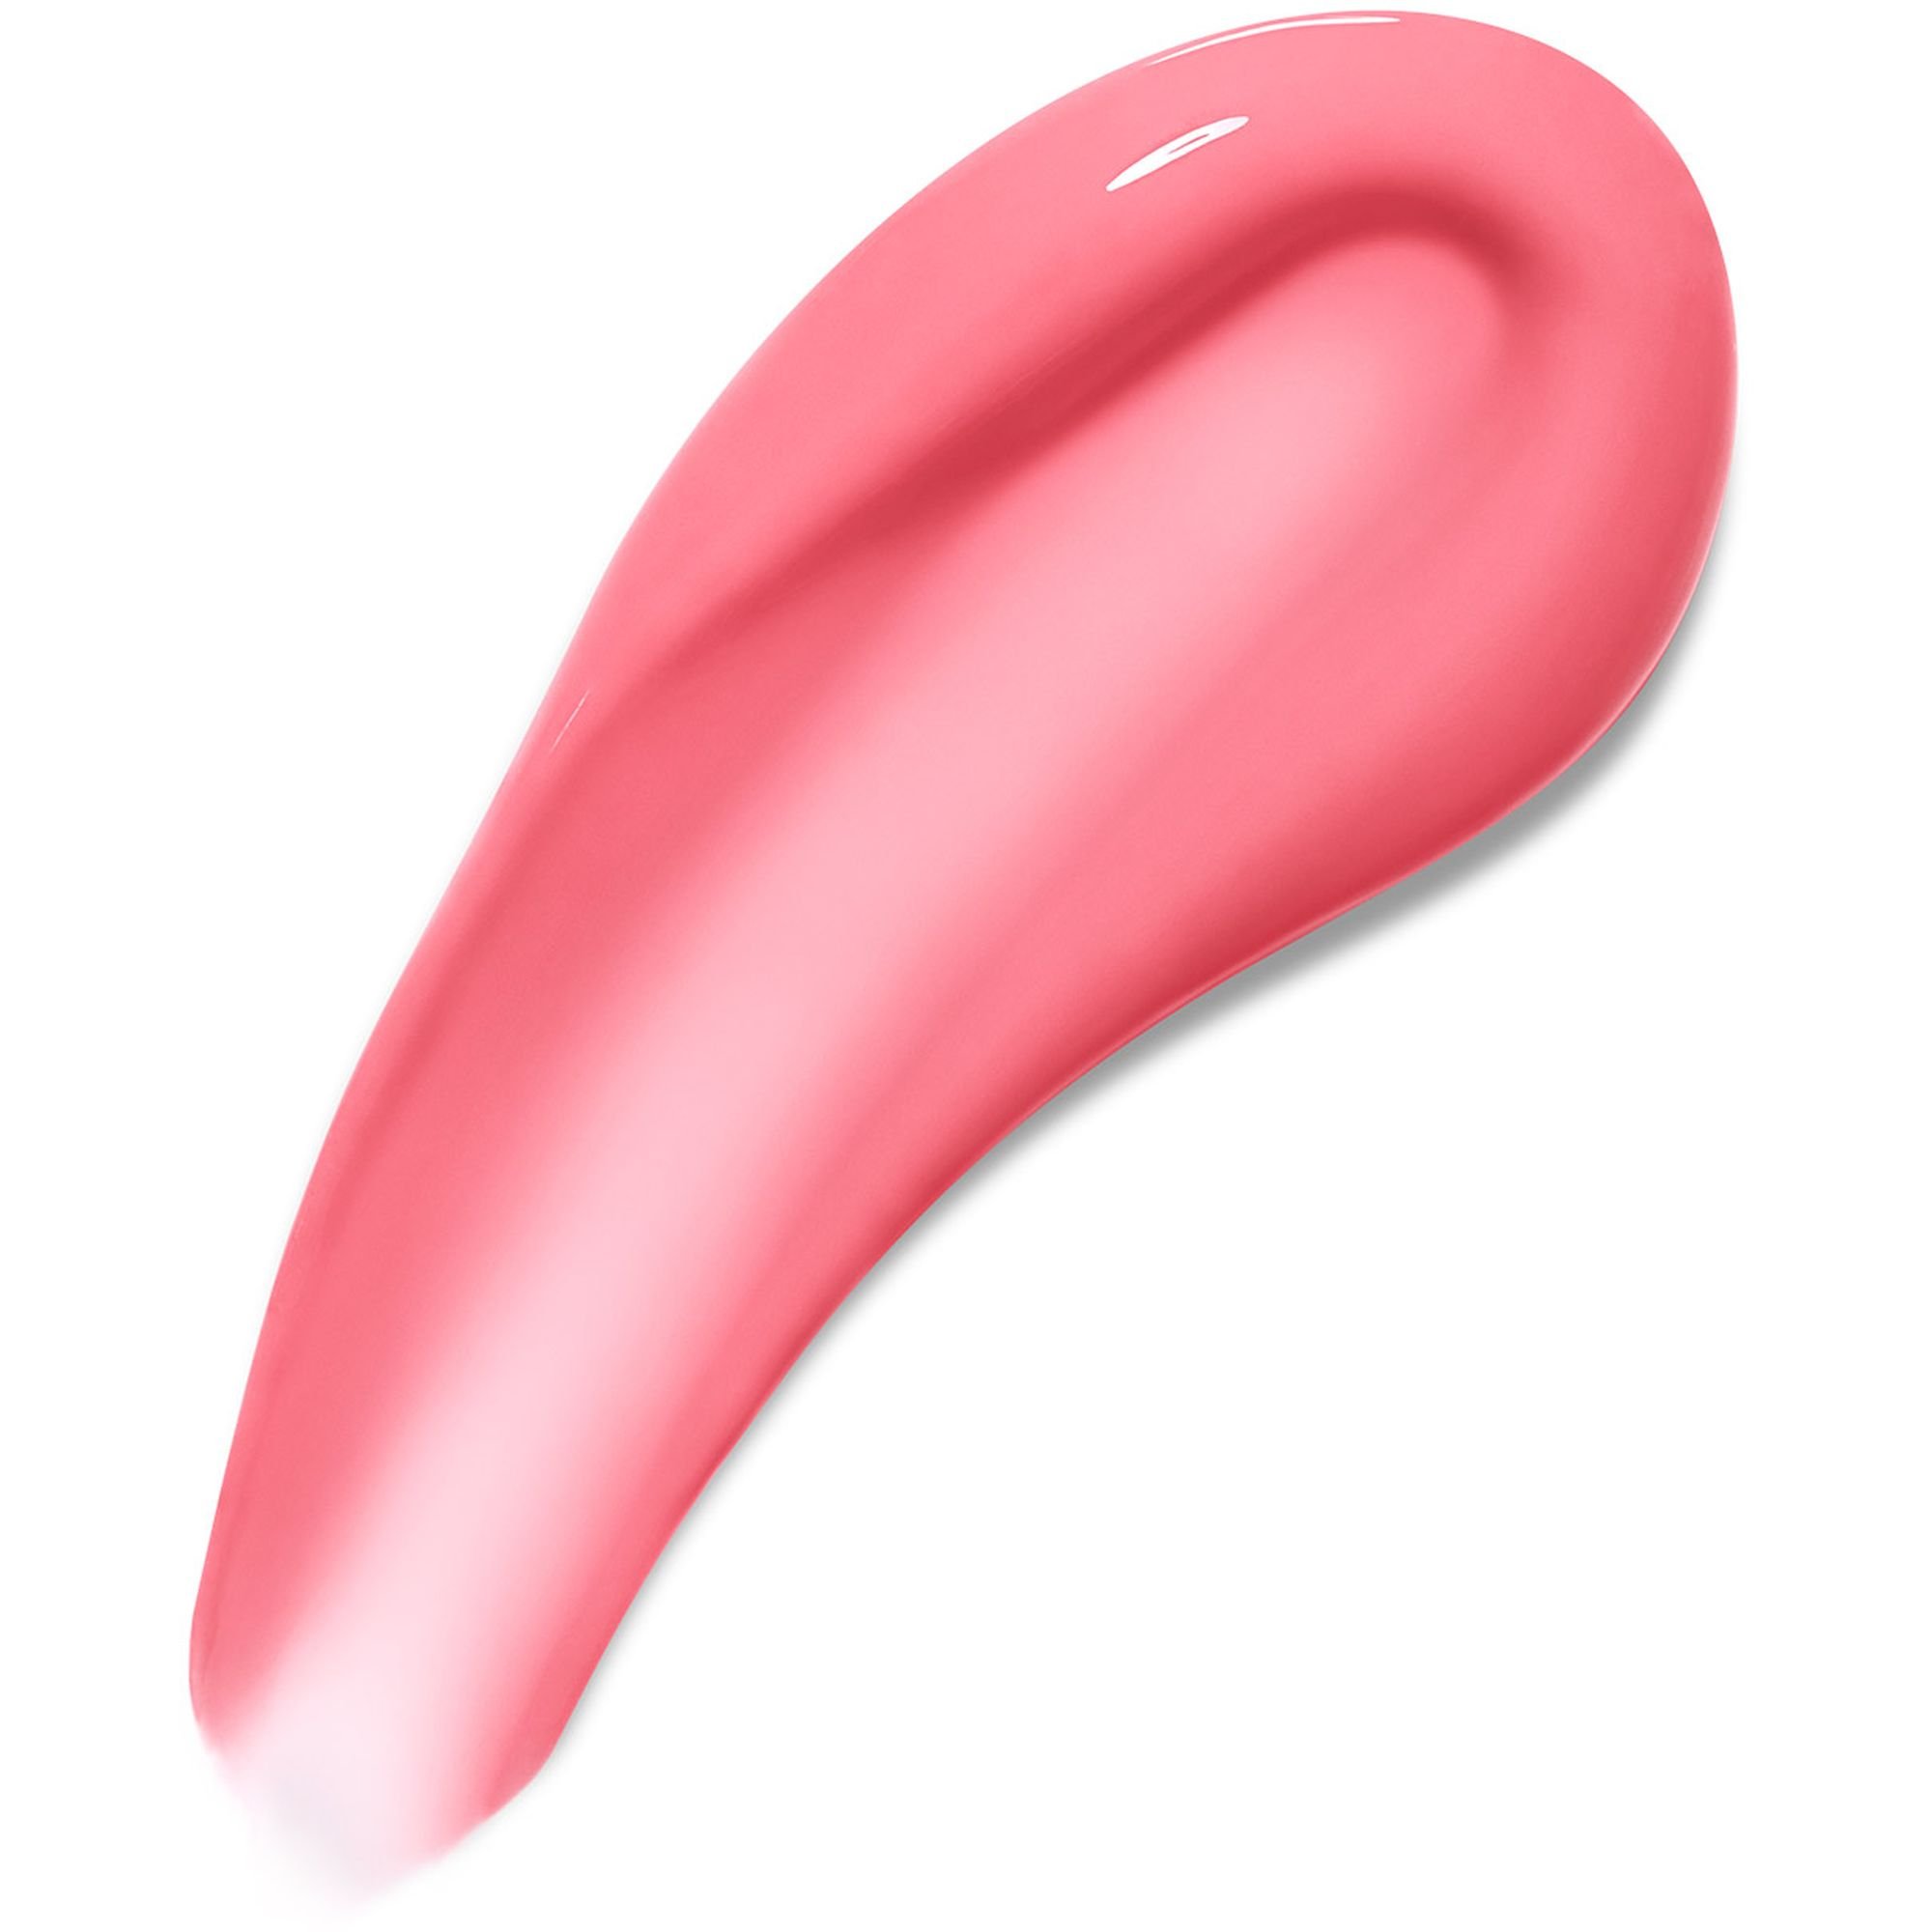 Блеск-плампер для губ Maybelline New York с перцем чили 001 Blush blaze 5.4 мл (B3485900) - фото 2